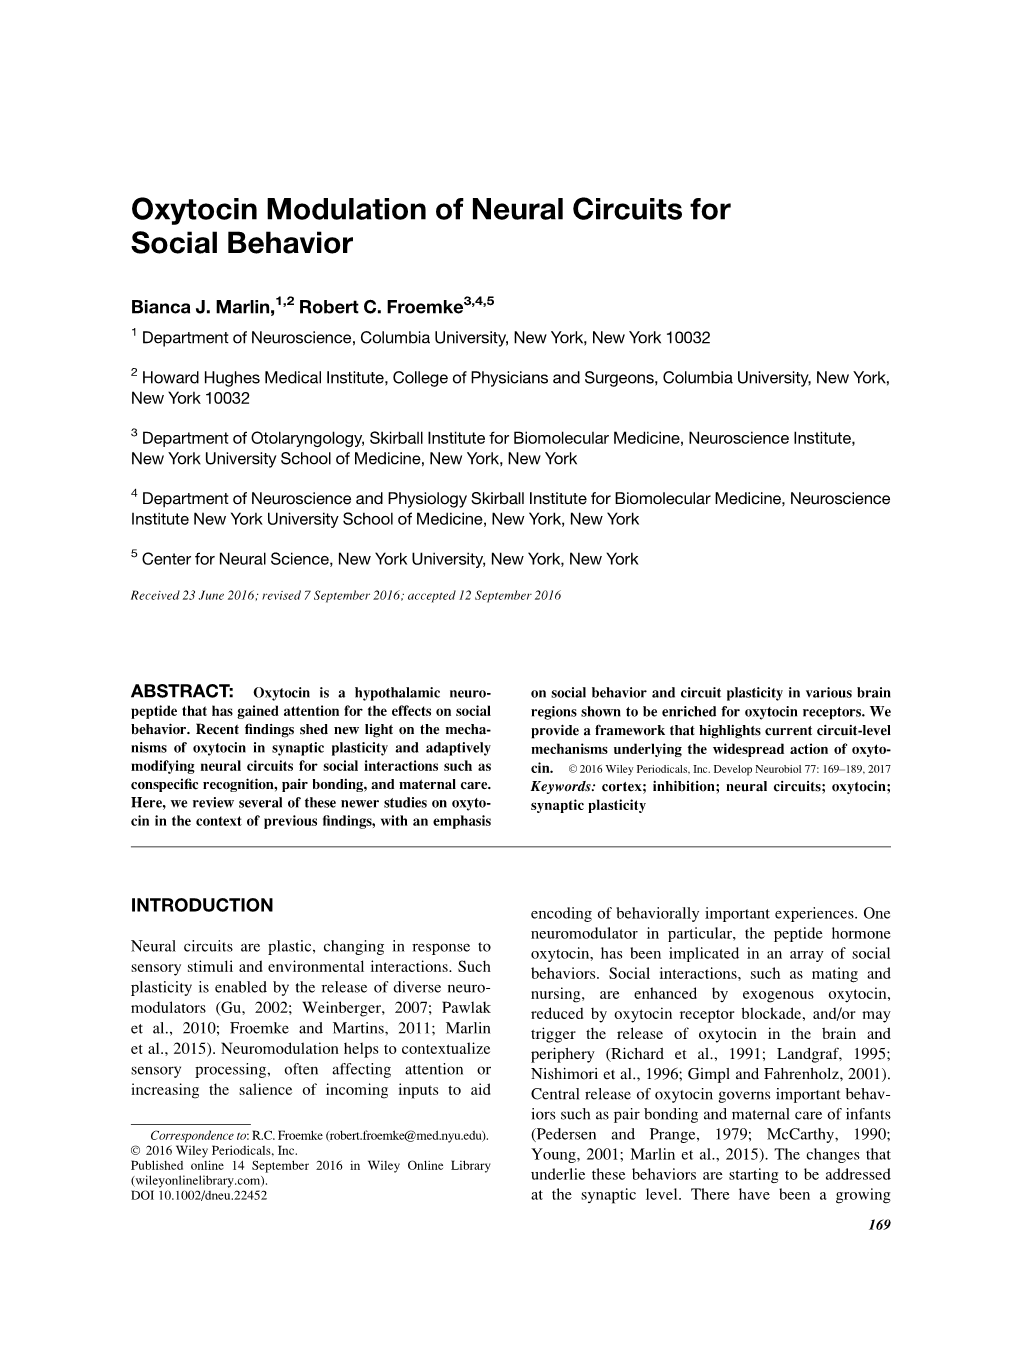 Oxytocin Modulation of Neural Circuits for Social Behavior